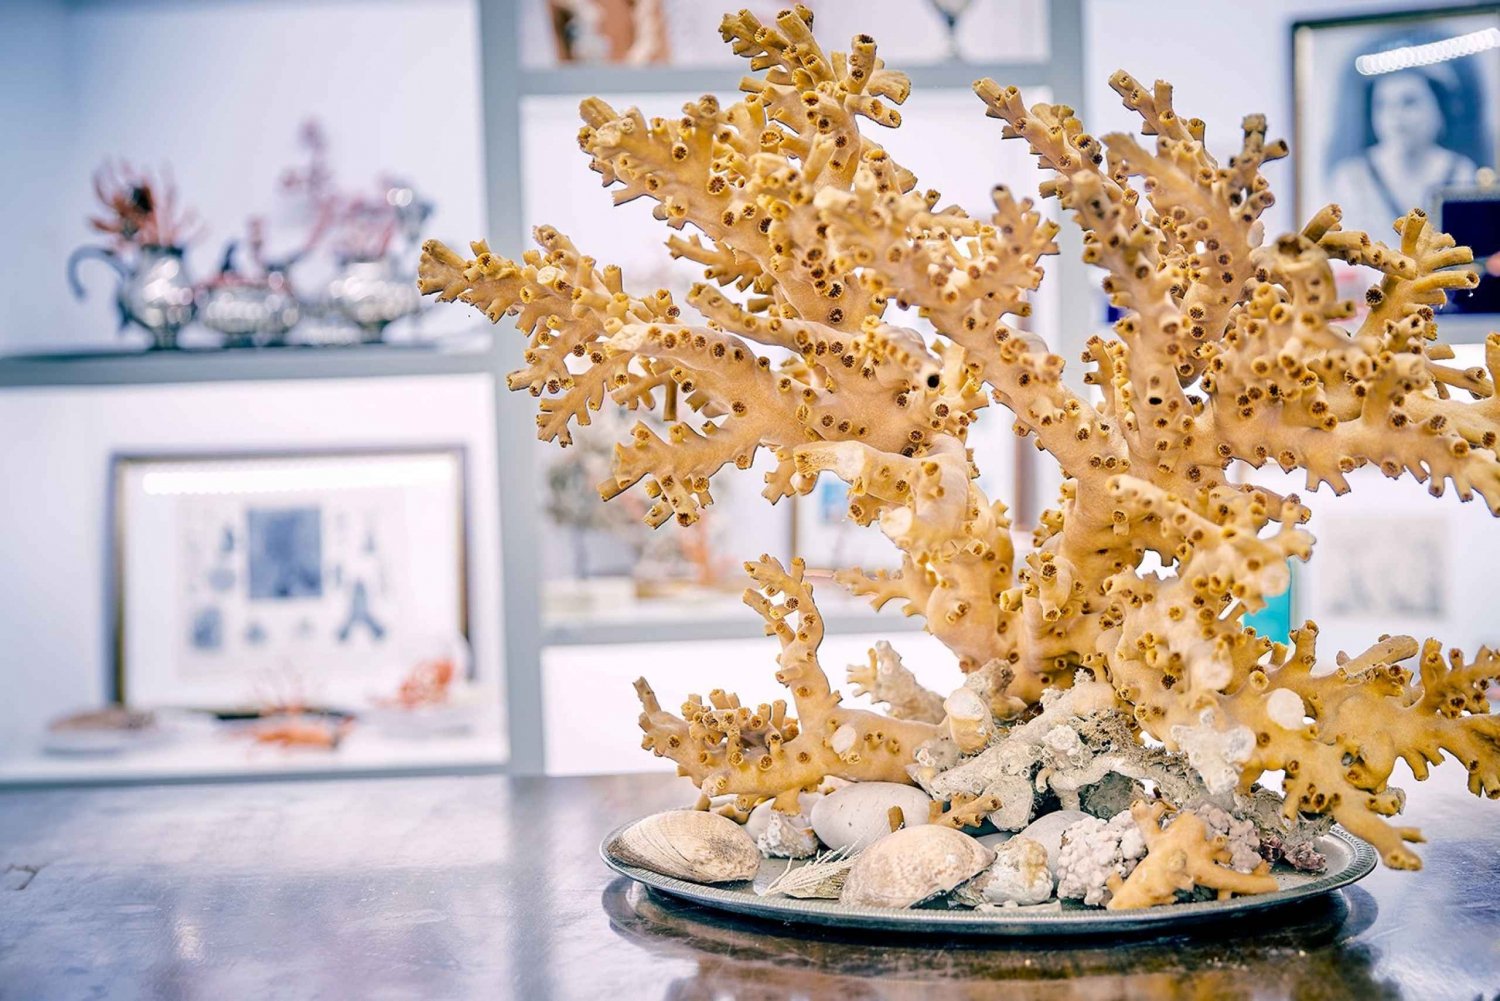 Oficina de corais e visita ao museu em Sicacca